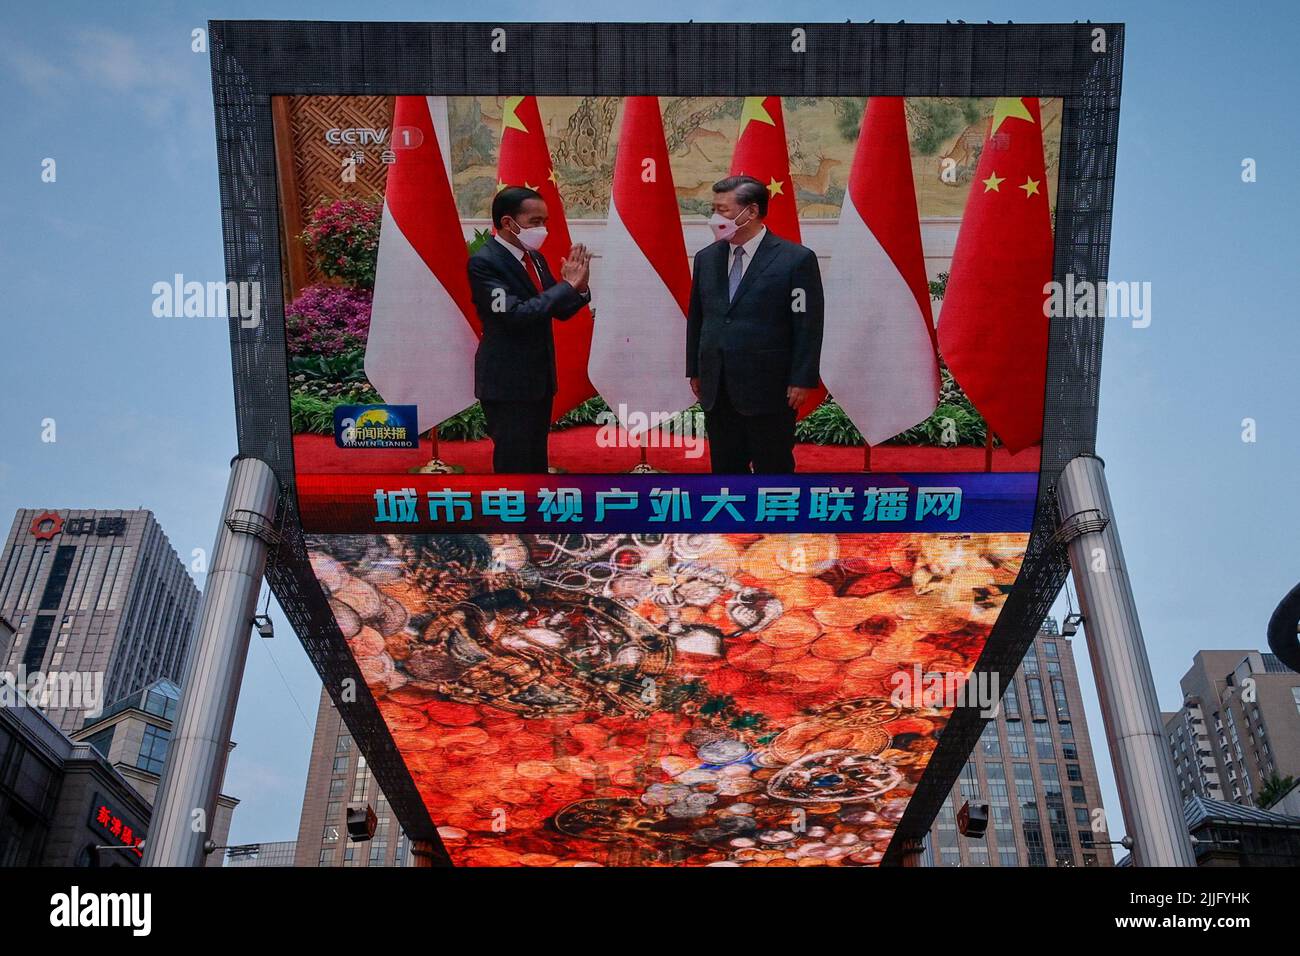 Un écran montre une émission de télévision en circuit fermé du président chinois Xi Jinping lors d'une rencontre avec le président indonésien Joko Widodo dans un centre commercial à Pékin, en Chine, au 26 juillet 2022. REUTERS/Thomas Peter Banque D'Images